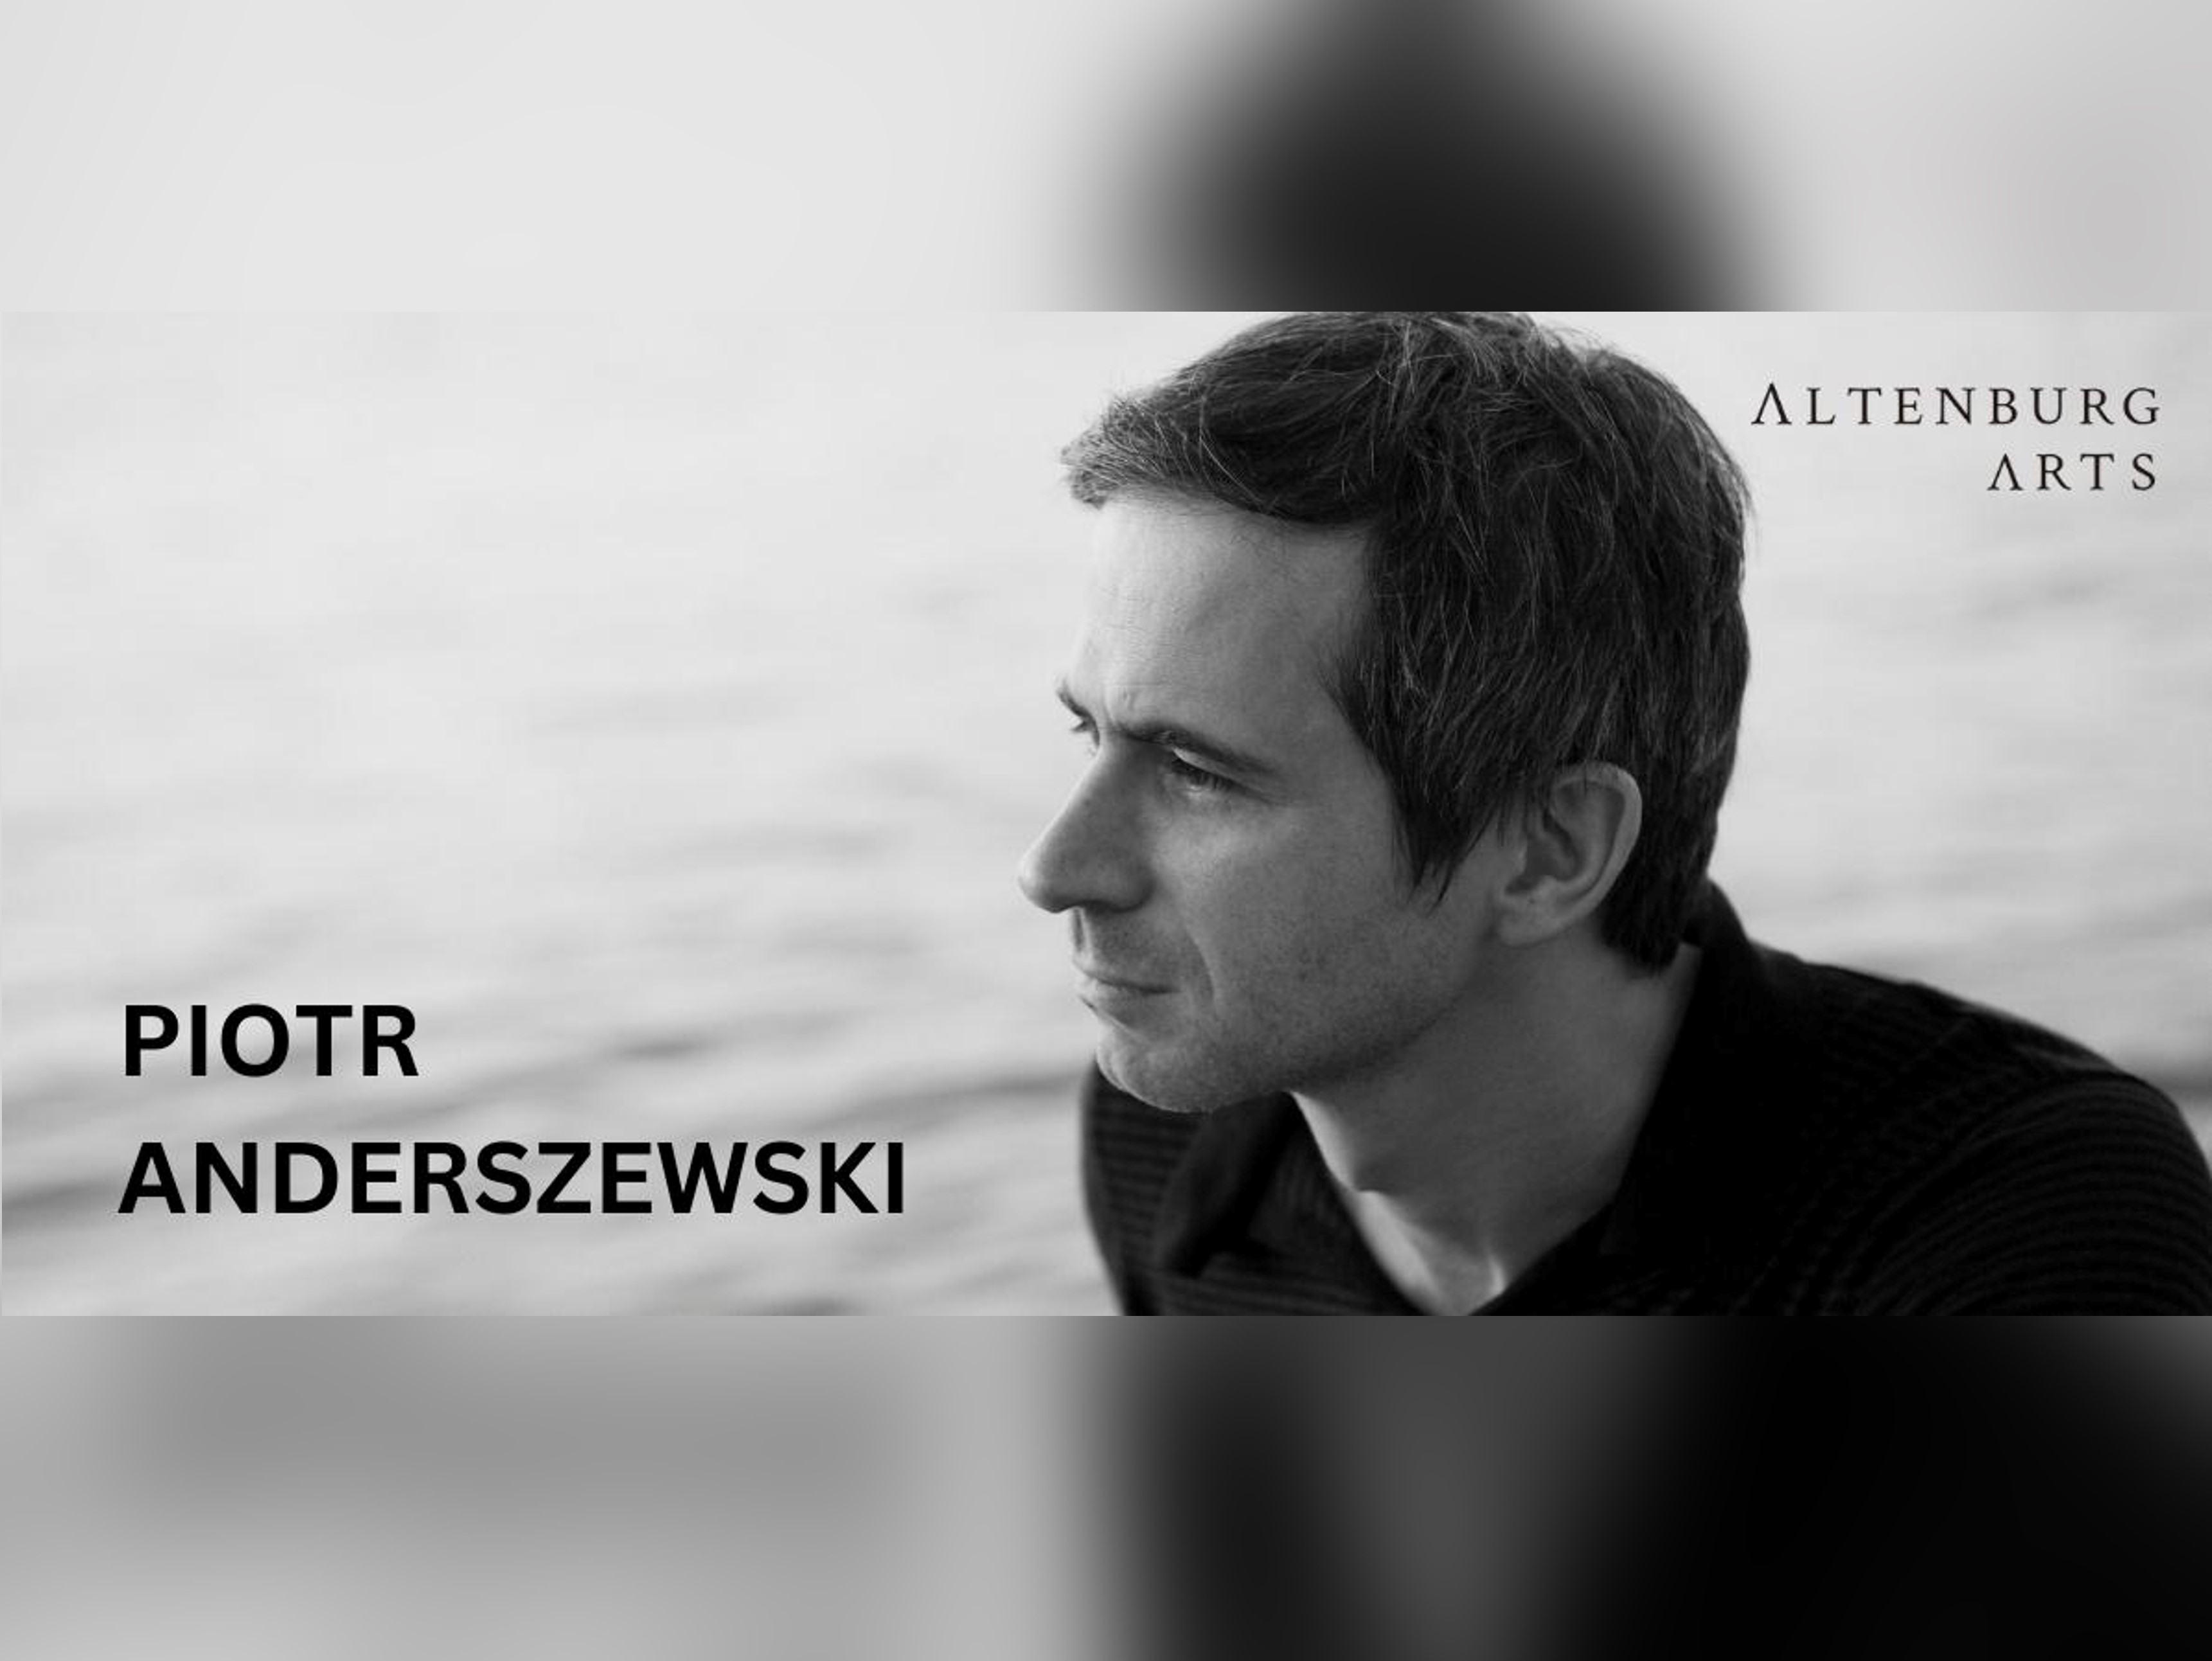 Piano Recital by Piotr Anderszewski